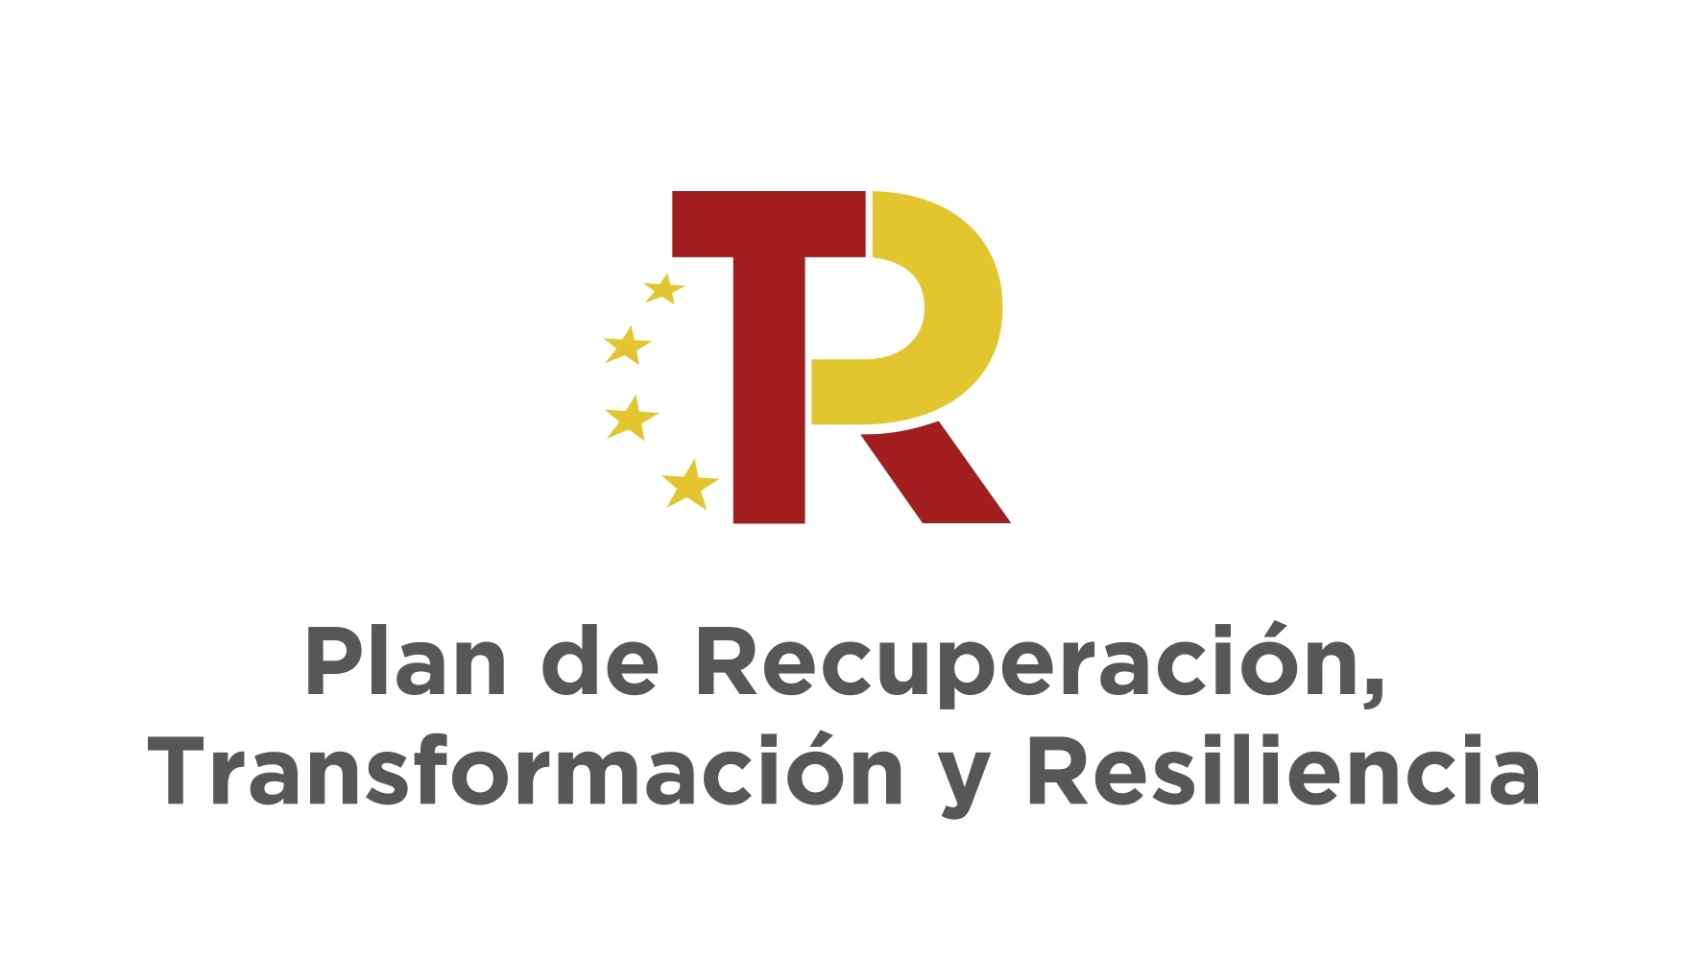 Imagen del Plan re Recuperación, Transformación y Resiliencia.